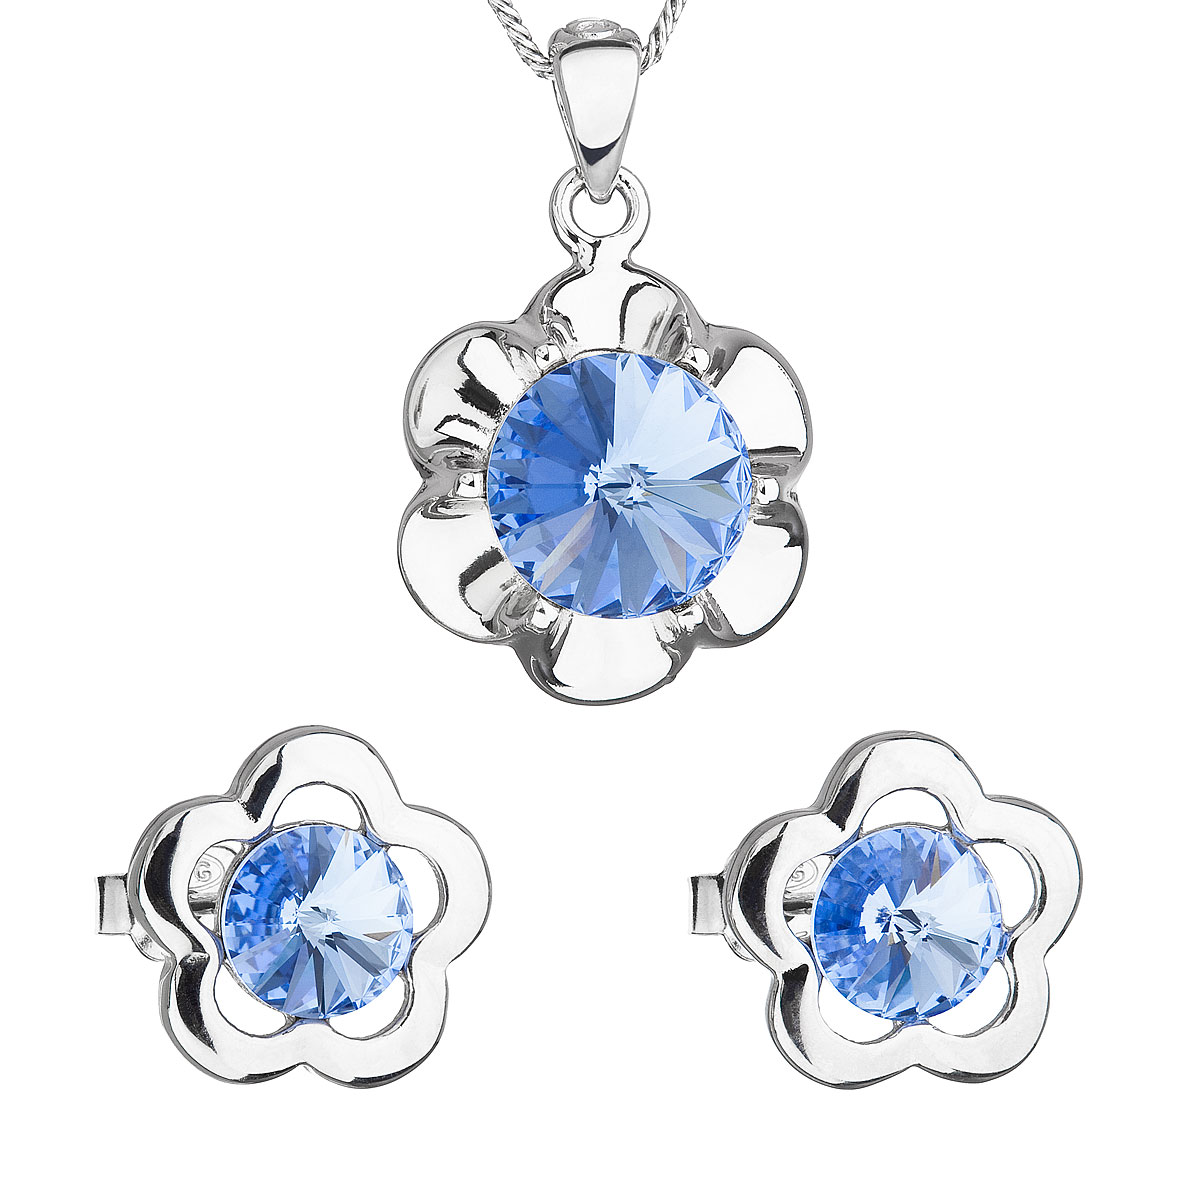 Evolution Group Sada šperků s krystaly Swarovski náušnice,řetízek a přívěsek modrá kytička 39173.3